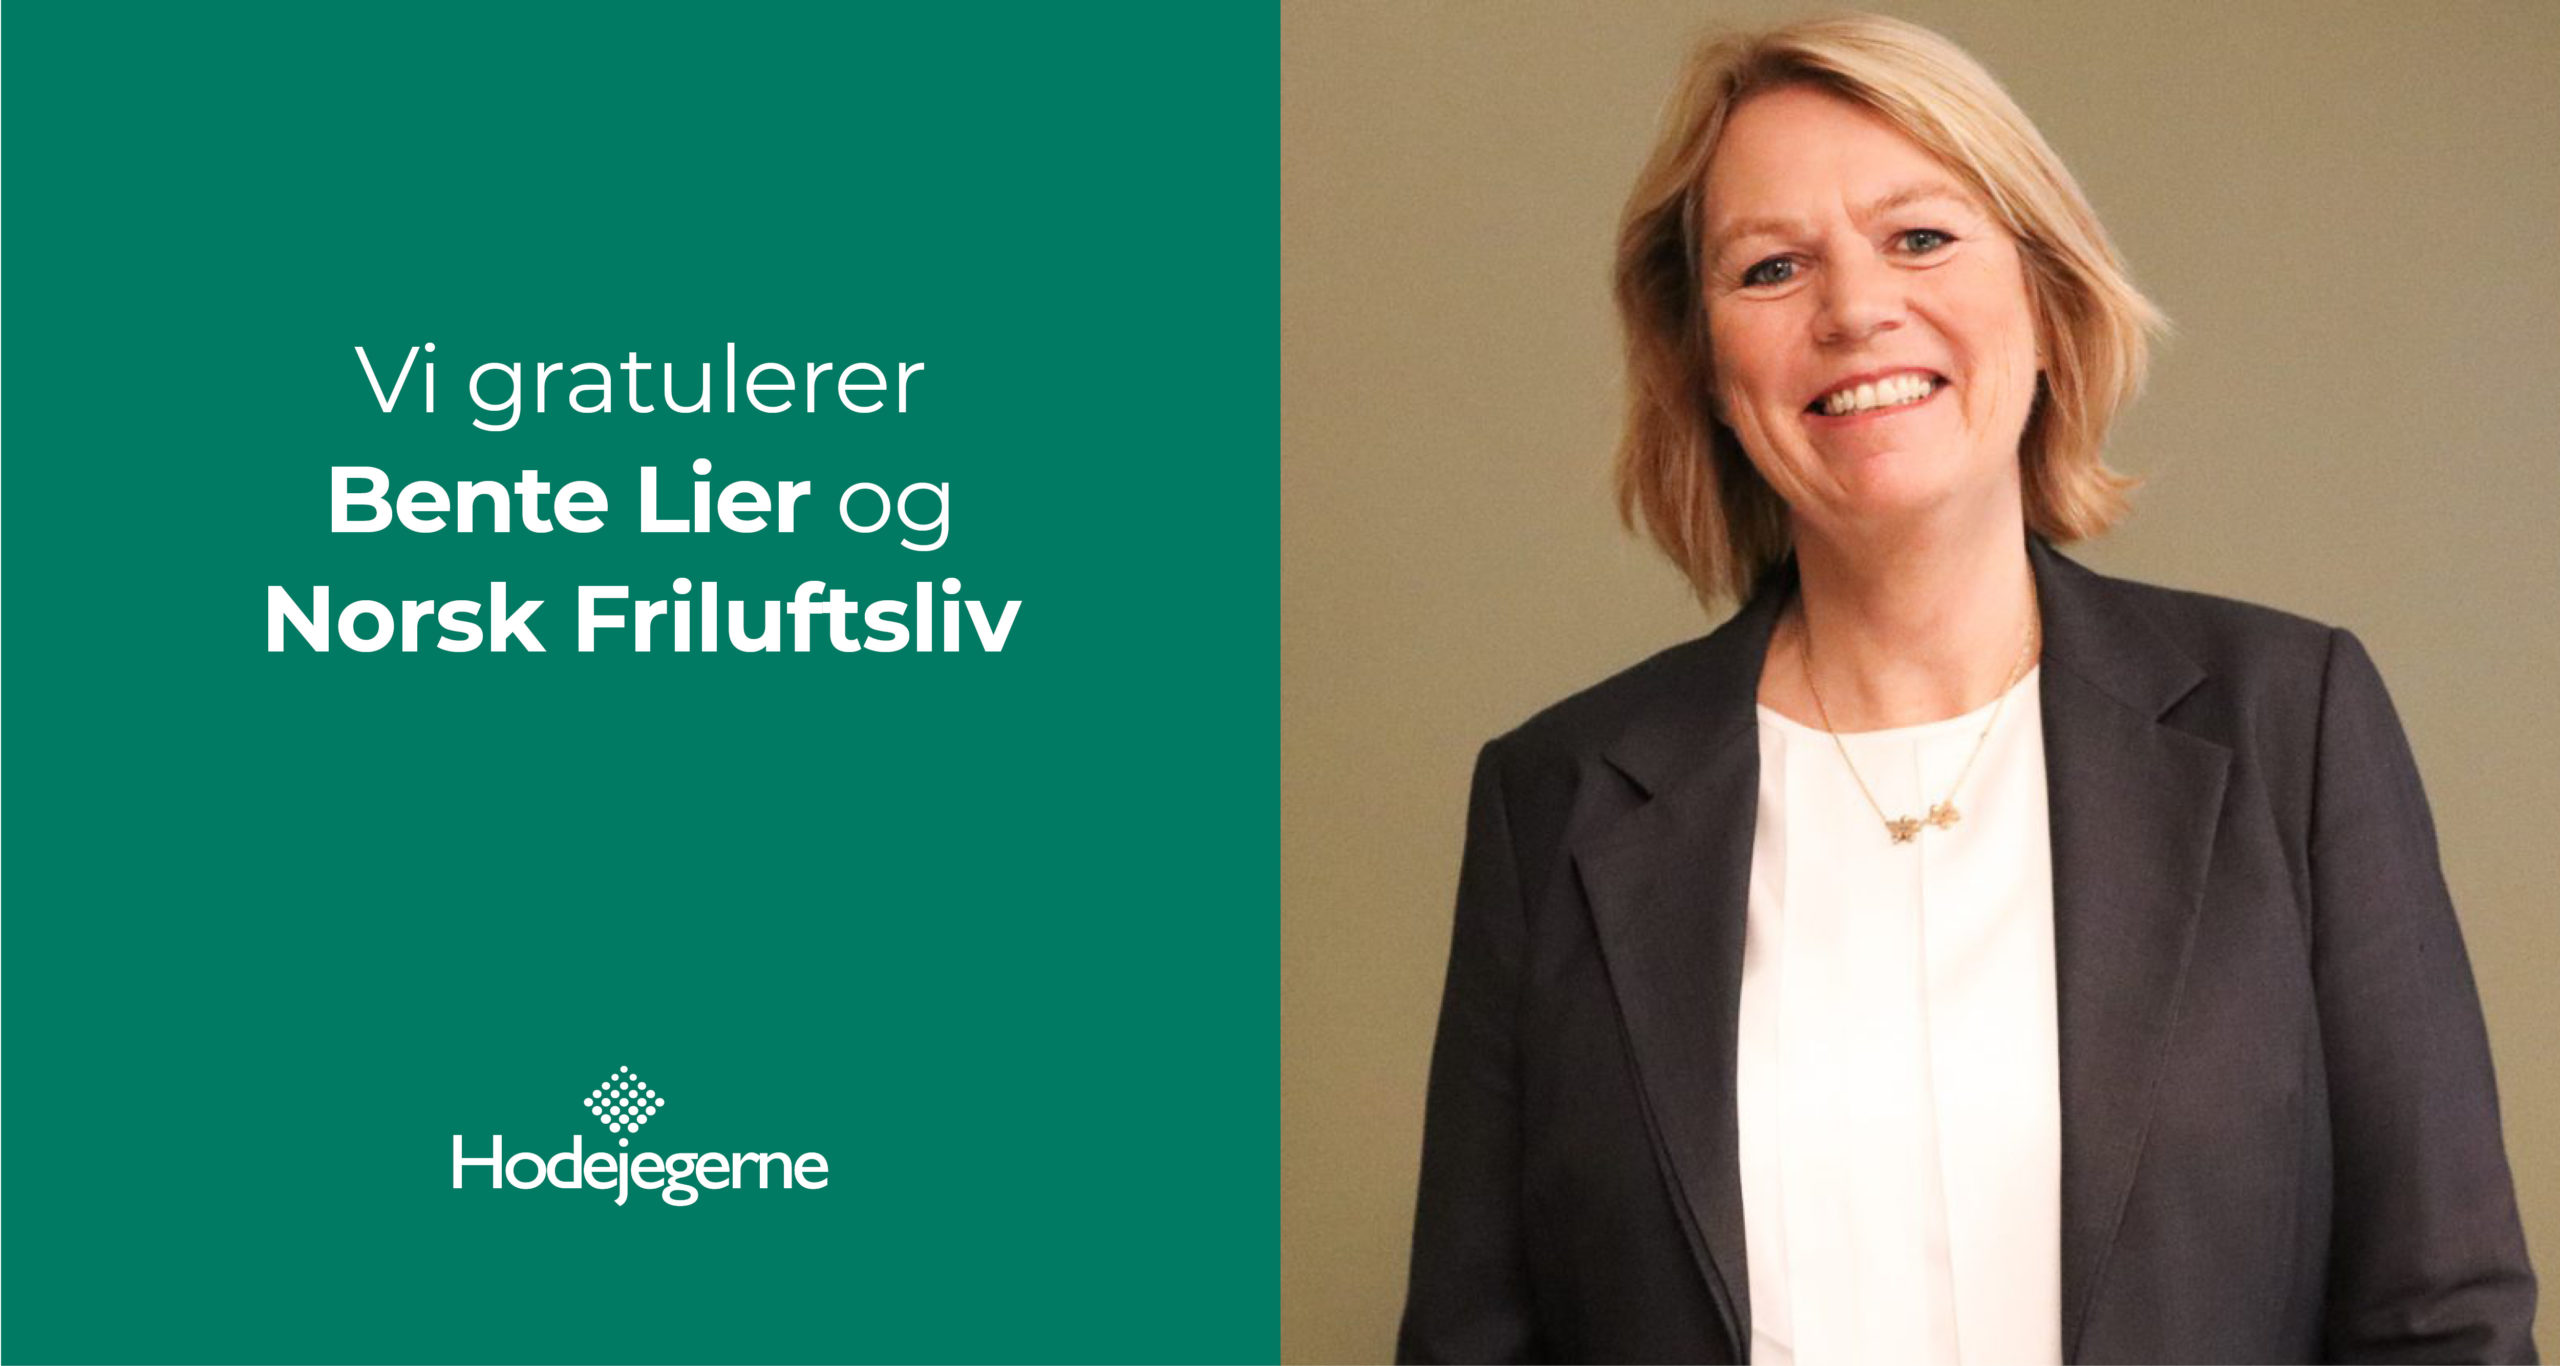 Bente Lier blir ny generalsekretær i Norsk Friluftsliv